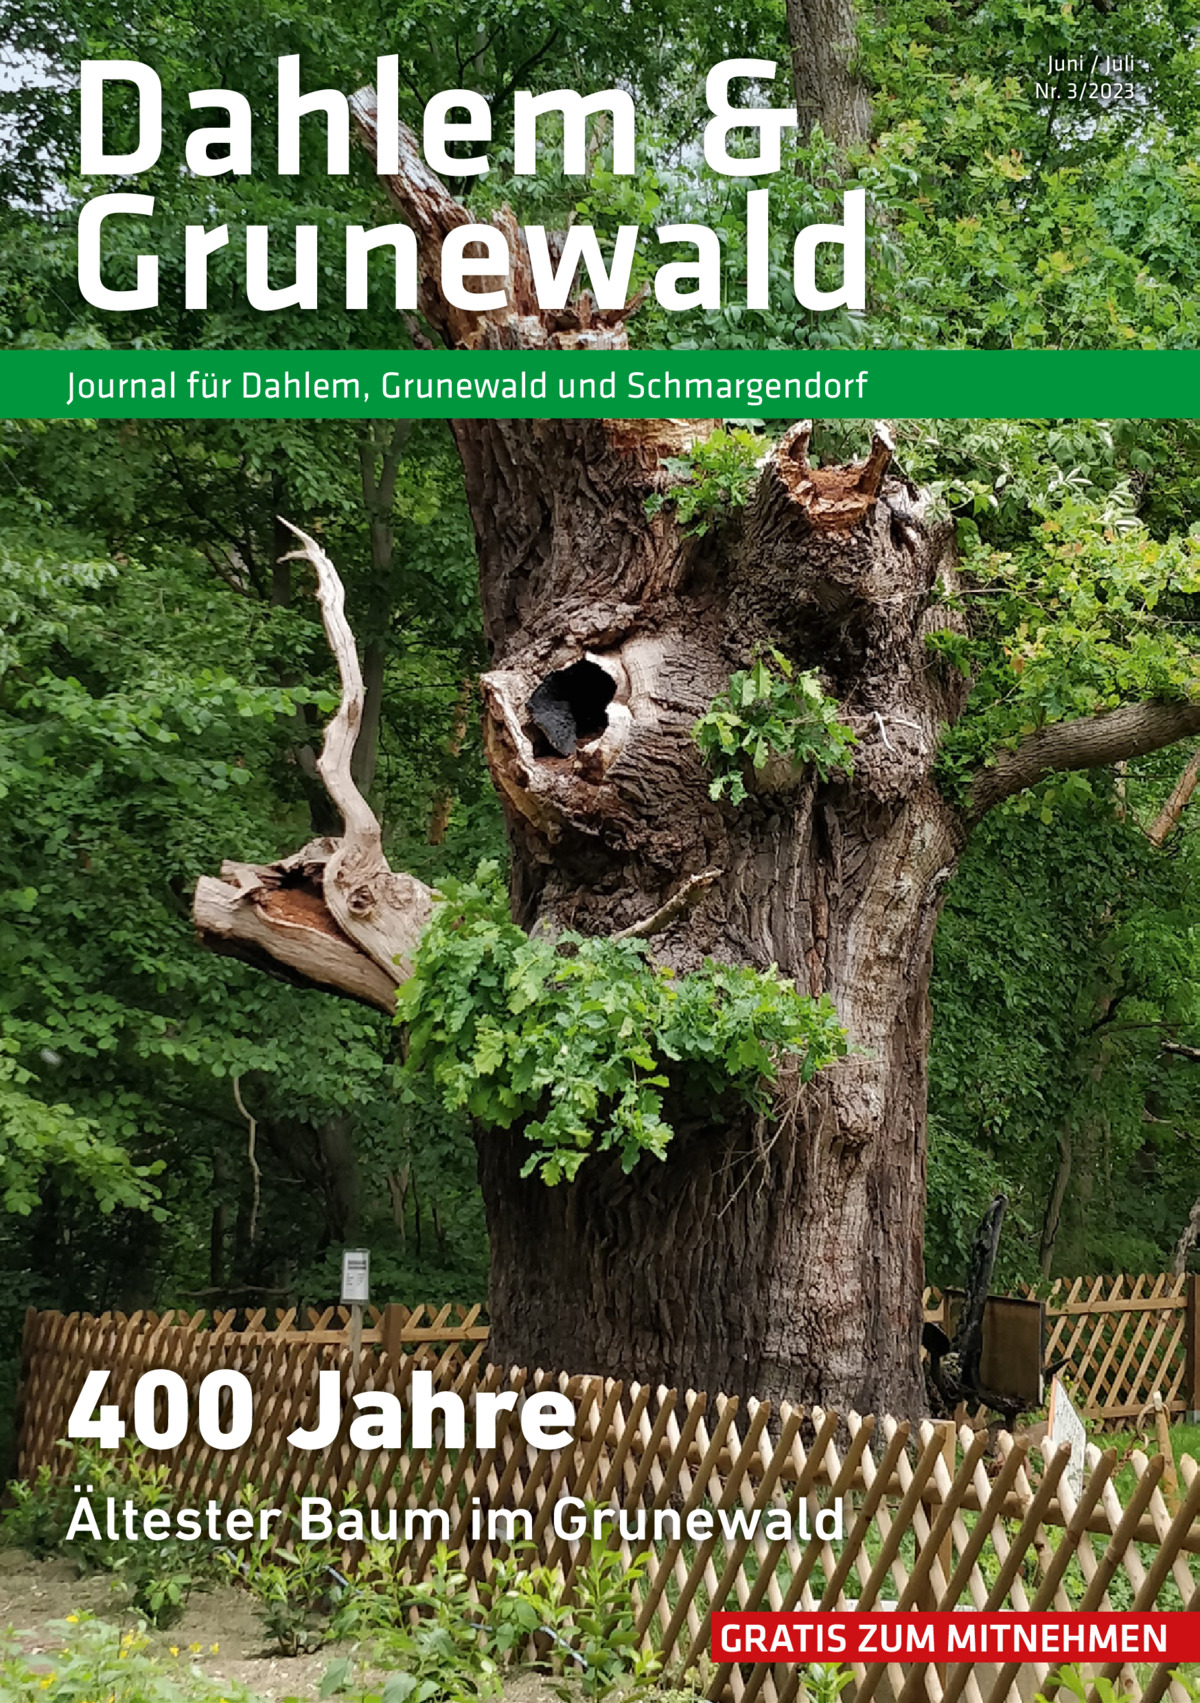 Dahlem & Grunewald  Juni / Juli Nr. 3/2023  Journal für Dahlem, Grunewald und Schmargendorf  400 Jahre Ältester Baum im Grunewald GRATIS ZUM MITNEHMEN